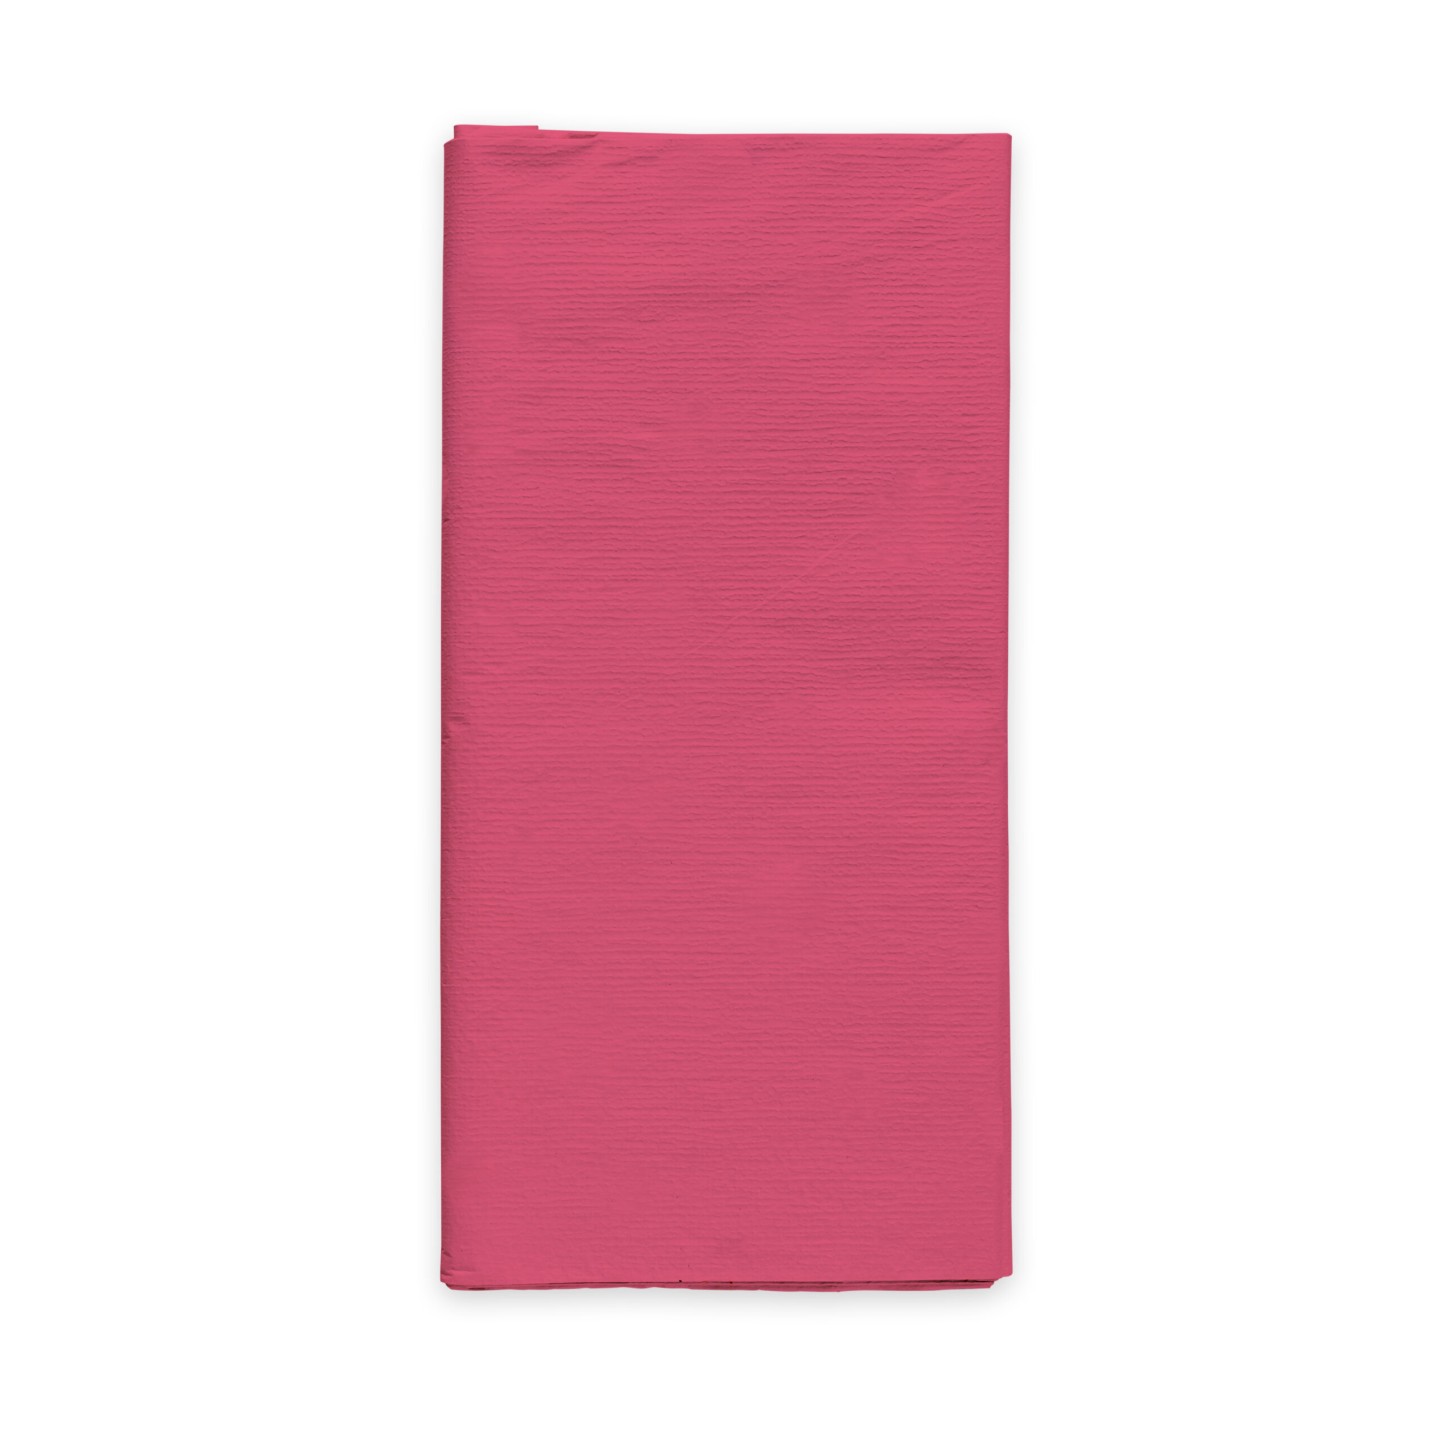 papieren tafelkleed roze tafelpapier